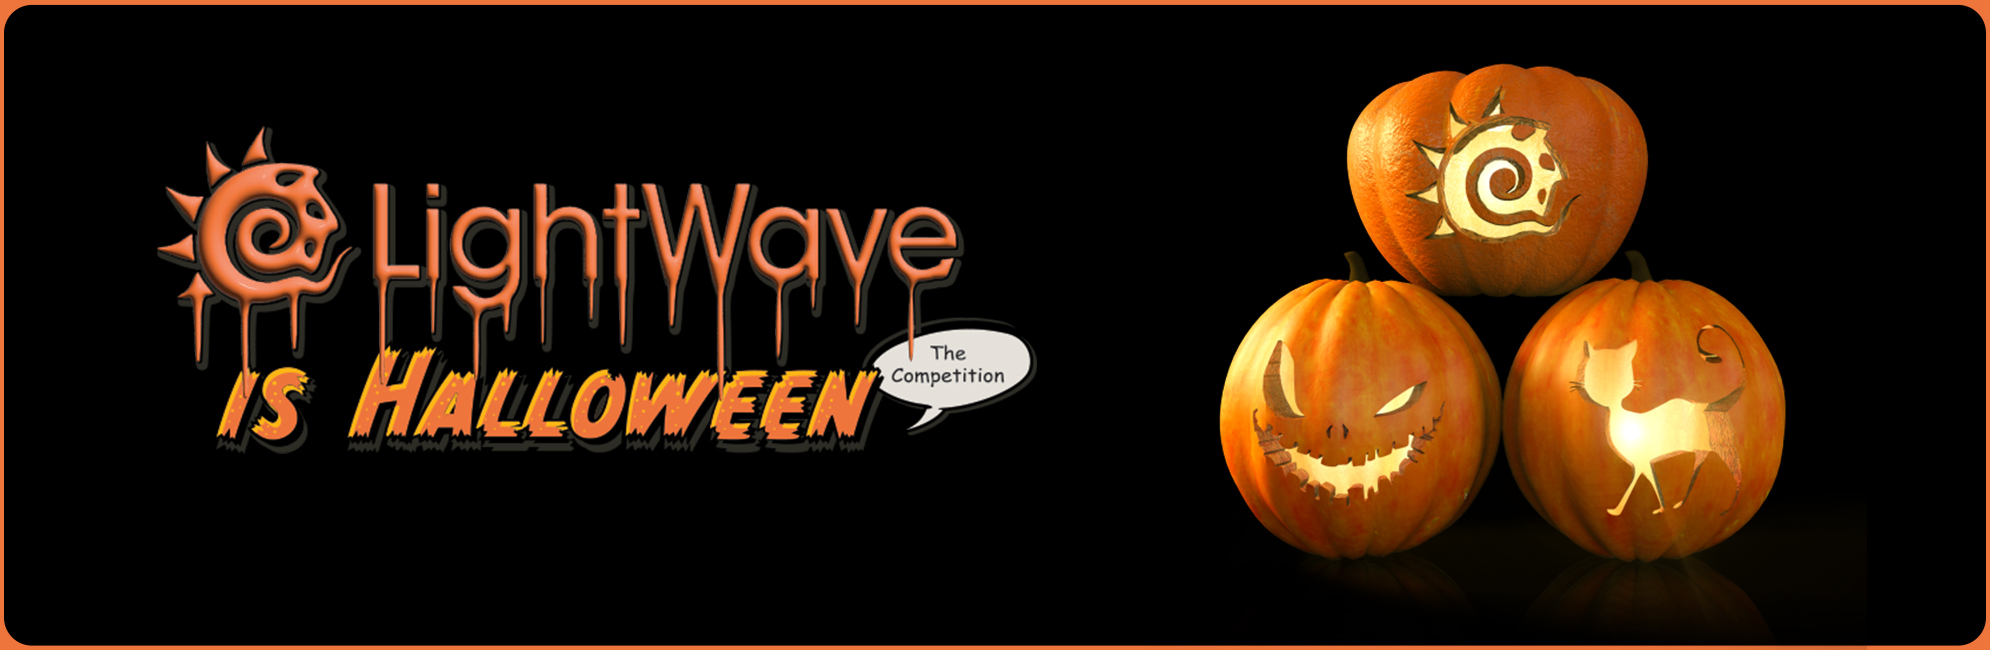 Nome: LightWave is Halloween  LightWave 3D Promo 20320918.jpg
Visite: 90
Dimensione: 387.4 KB